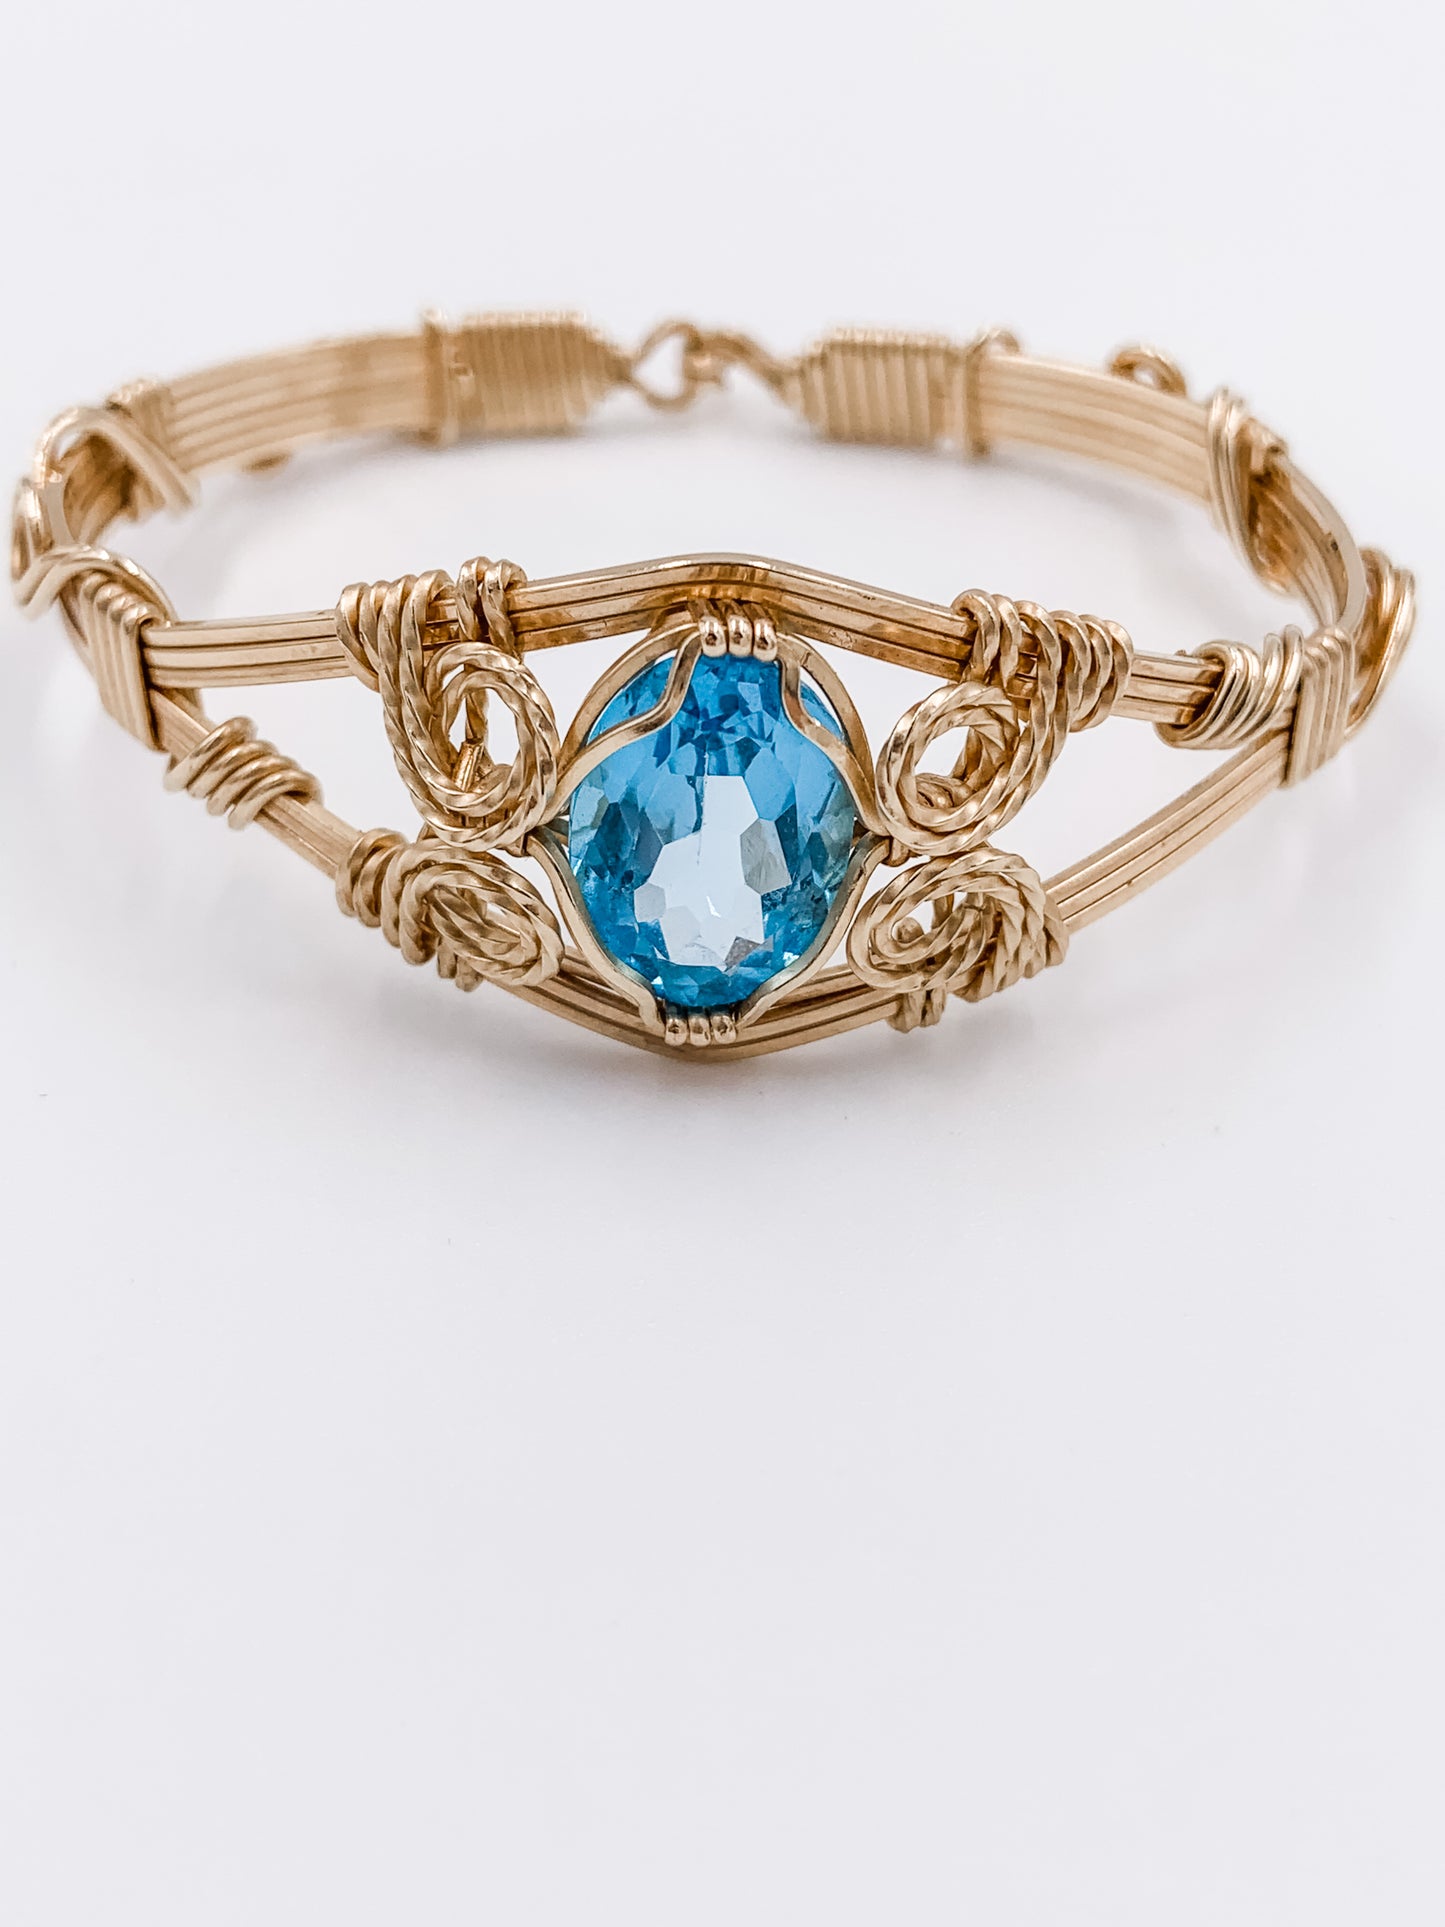 Gemstone Bracelet Blue Topaz 6 Strand